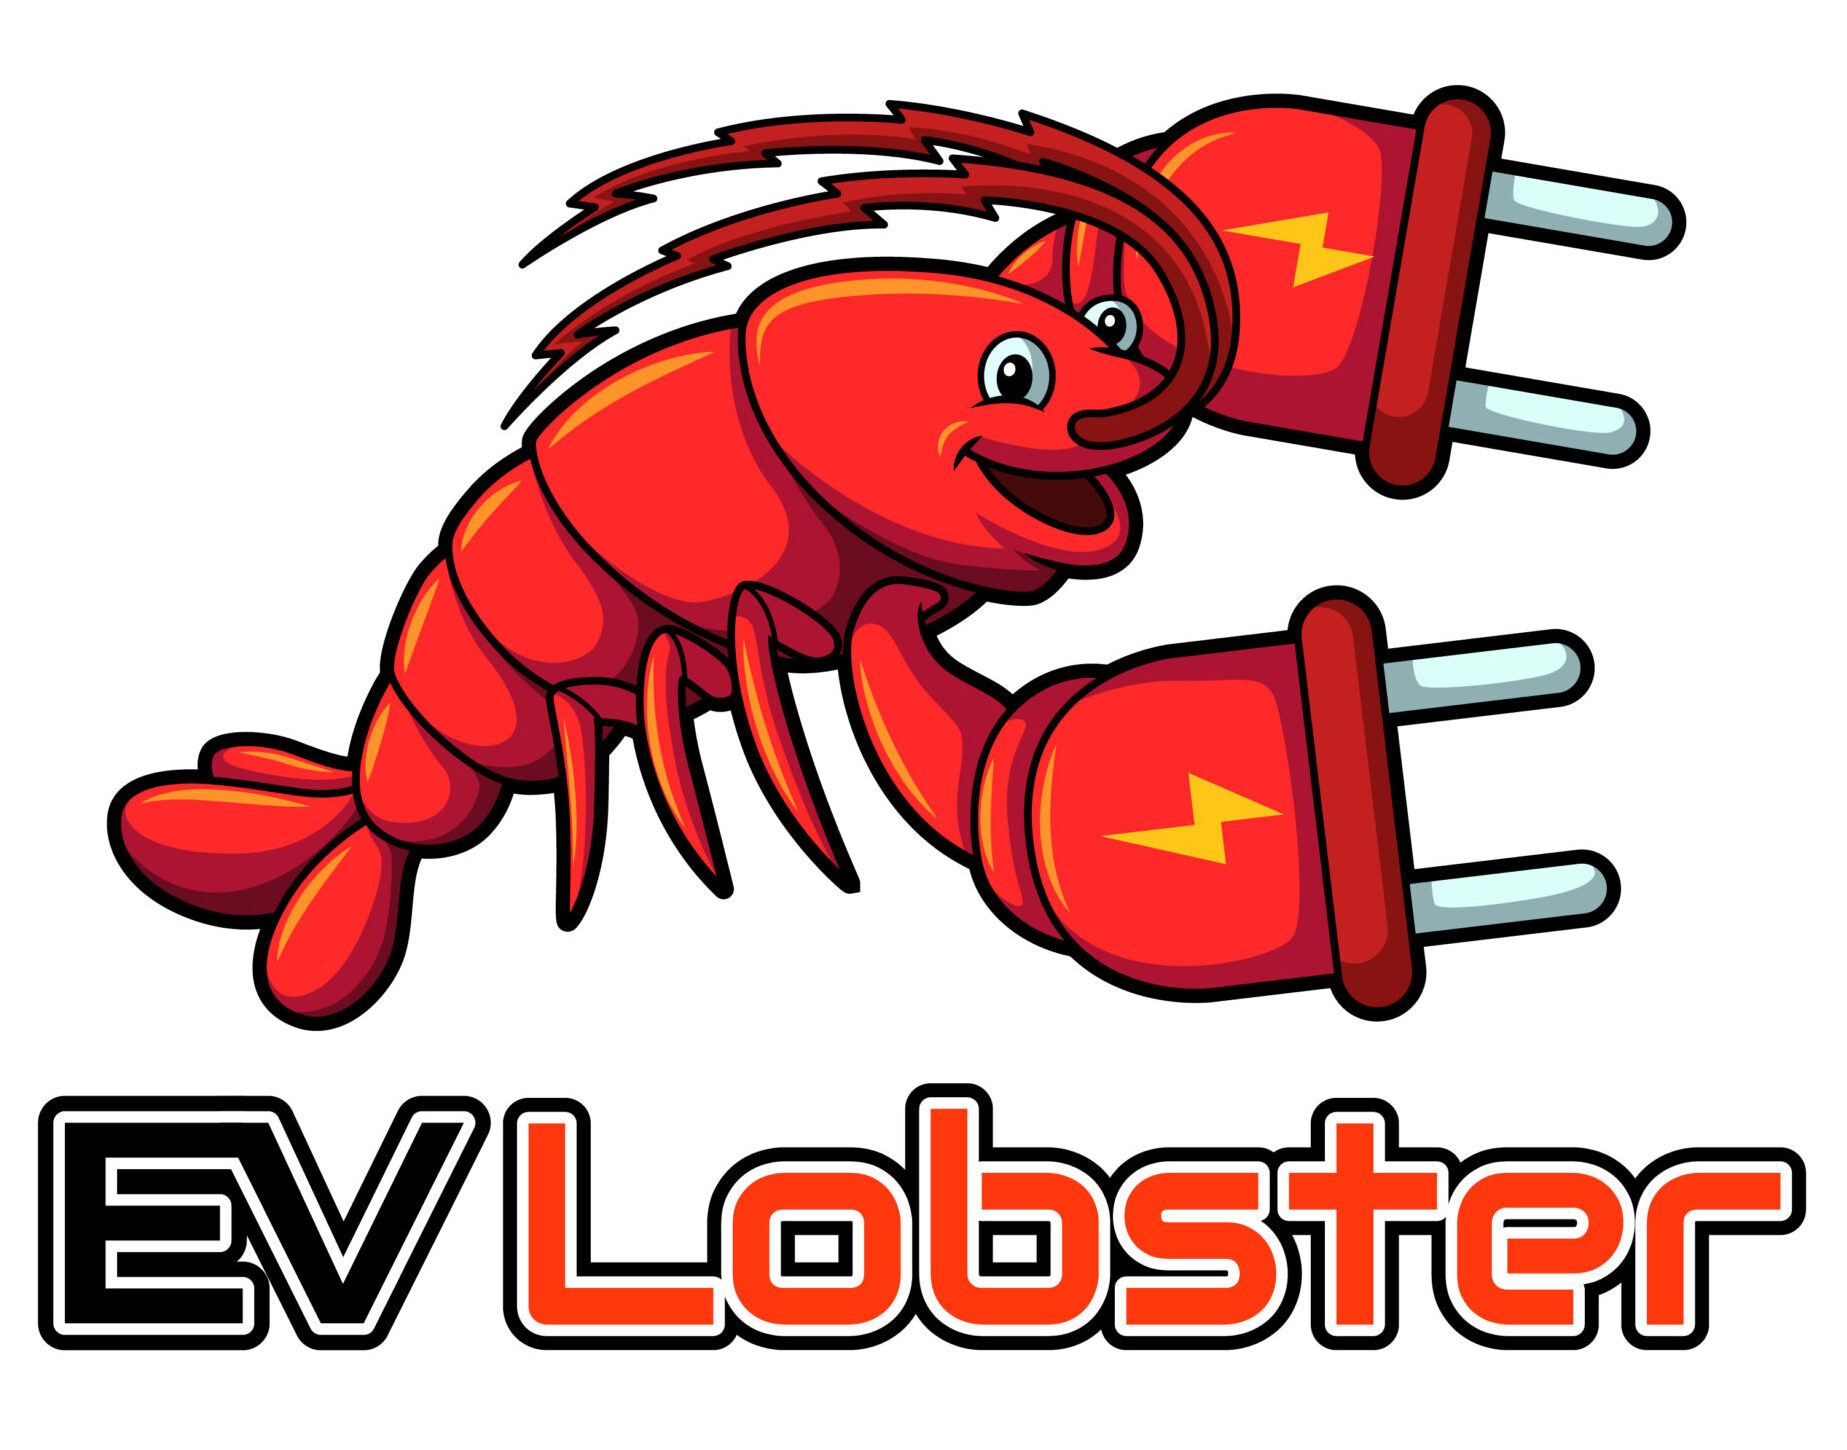 EV Lobster